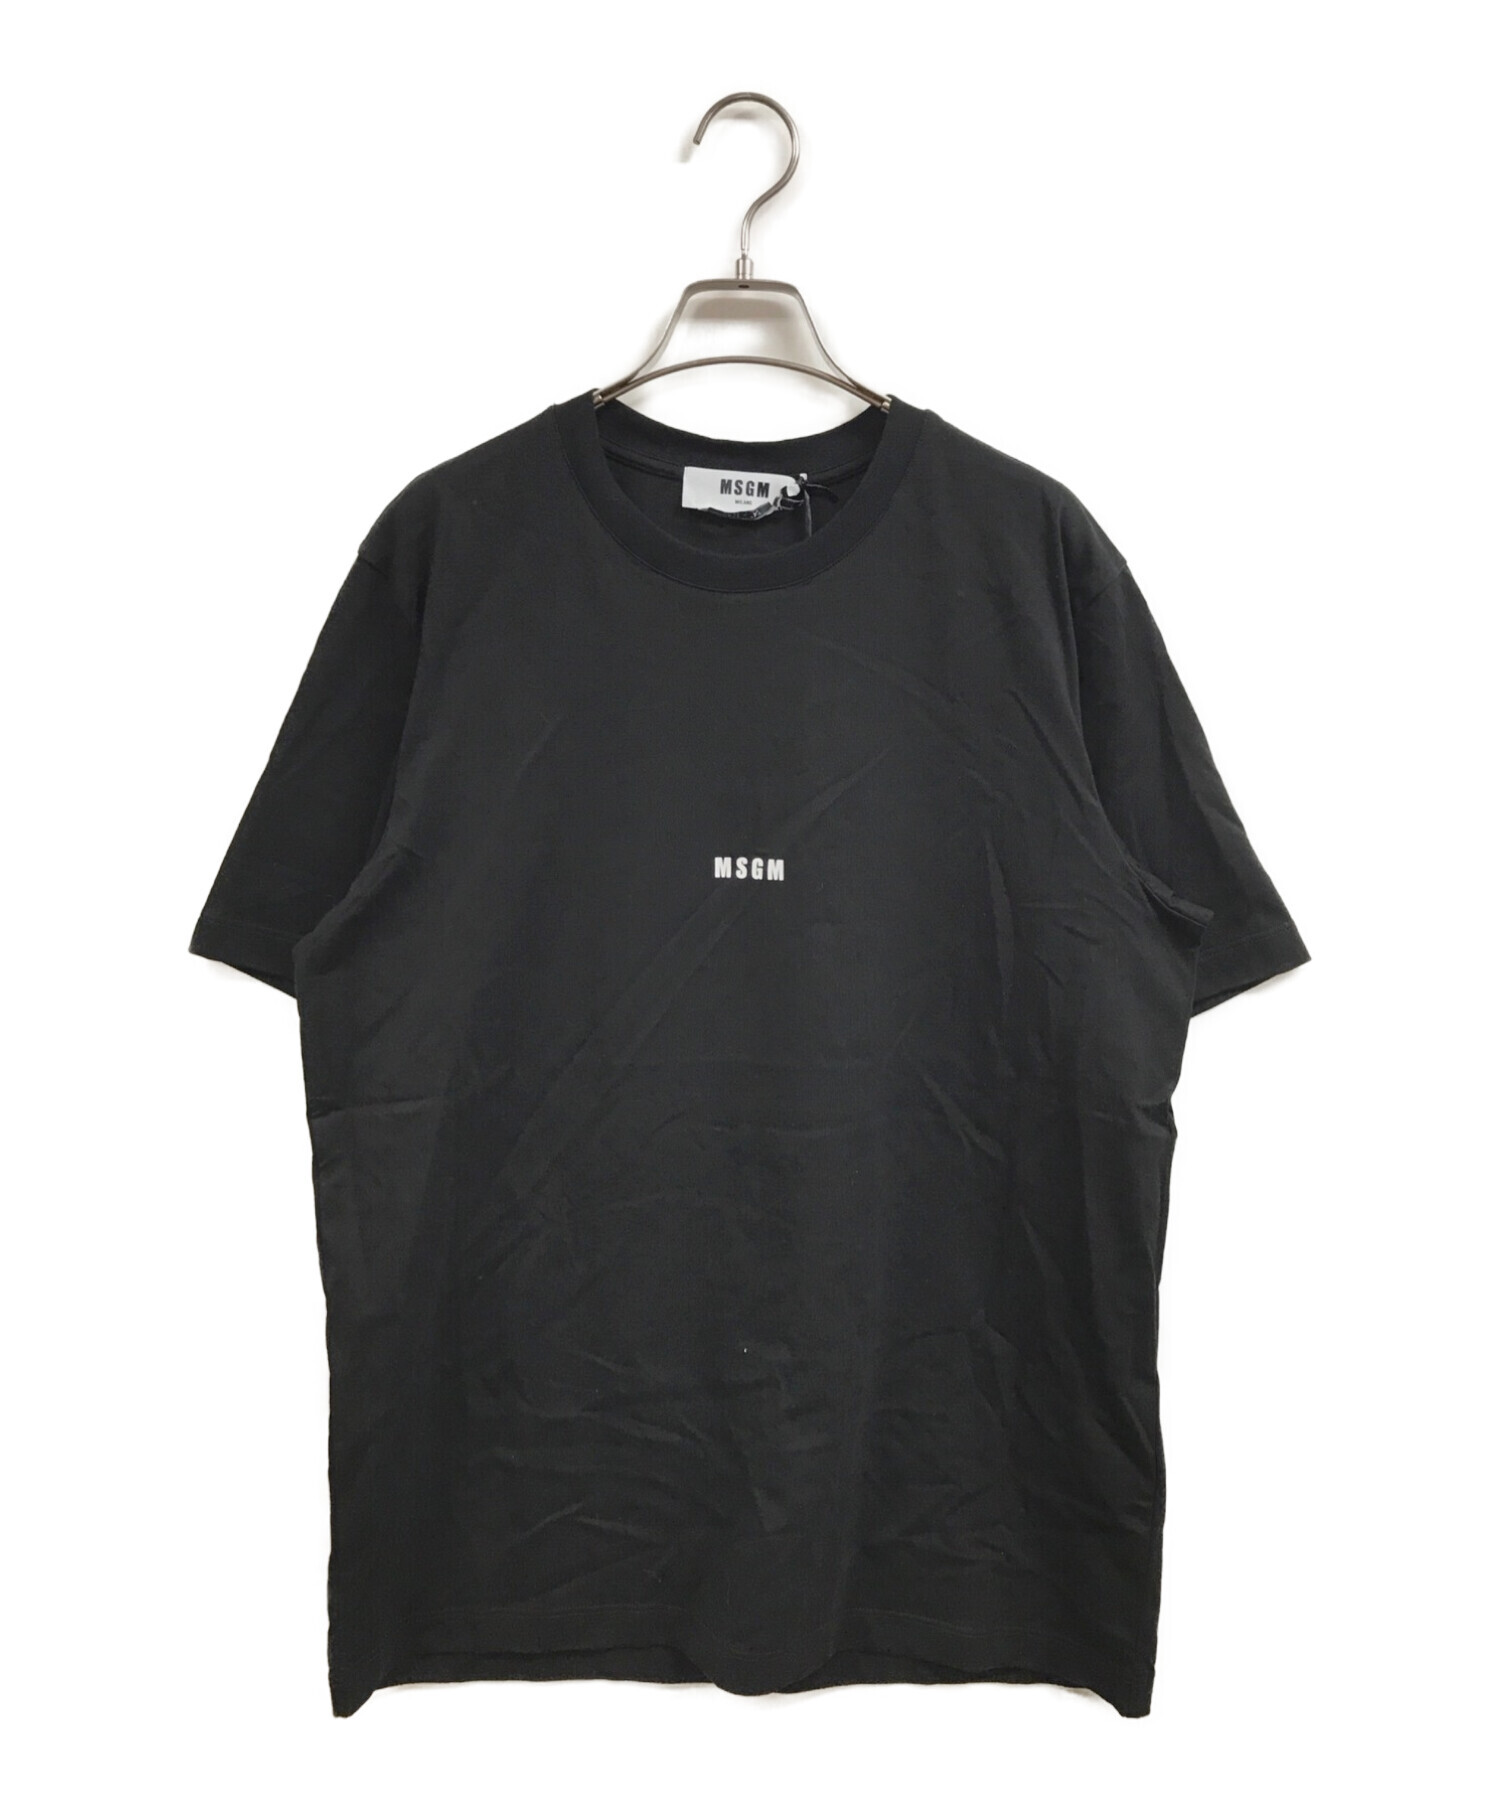 MSGM (エムエスジーエム) ミニロゴ クルーネックTシャツ ブラック サイズ:S